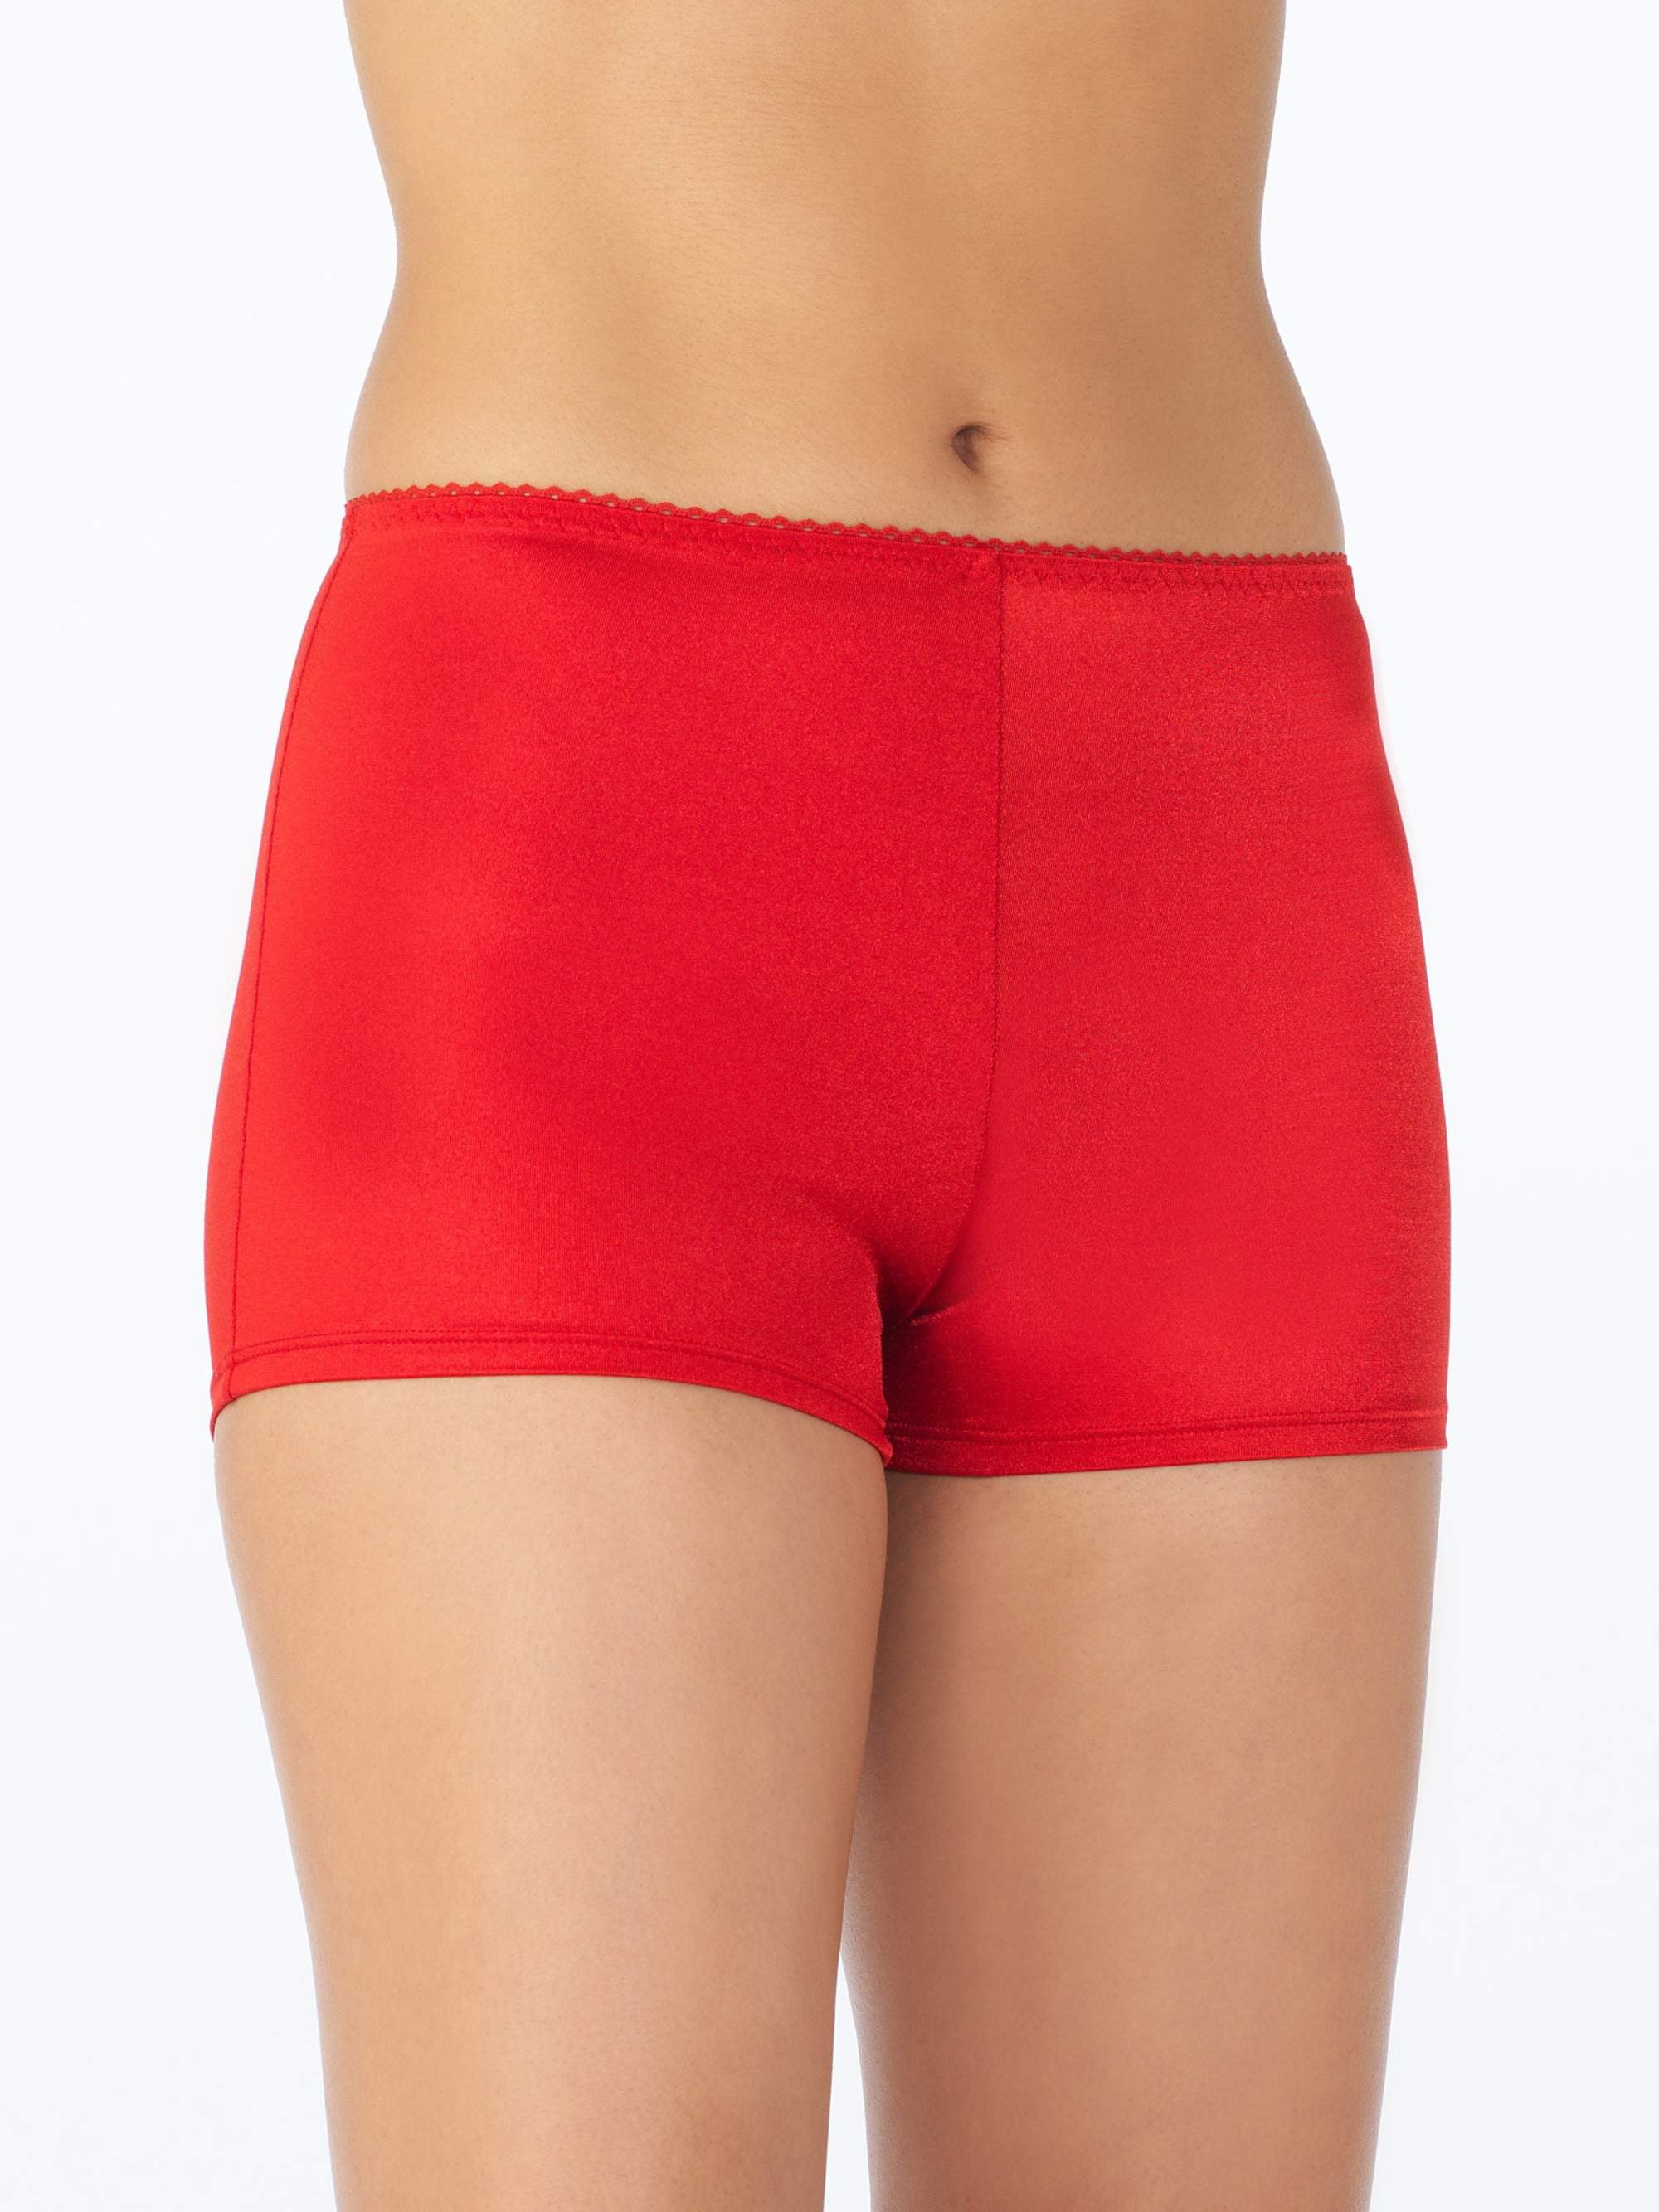 Women's Undershapers Light Control Boy Short Panty, Style 4842001